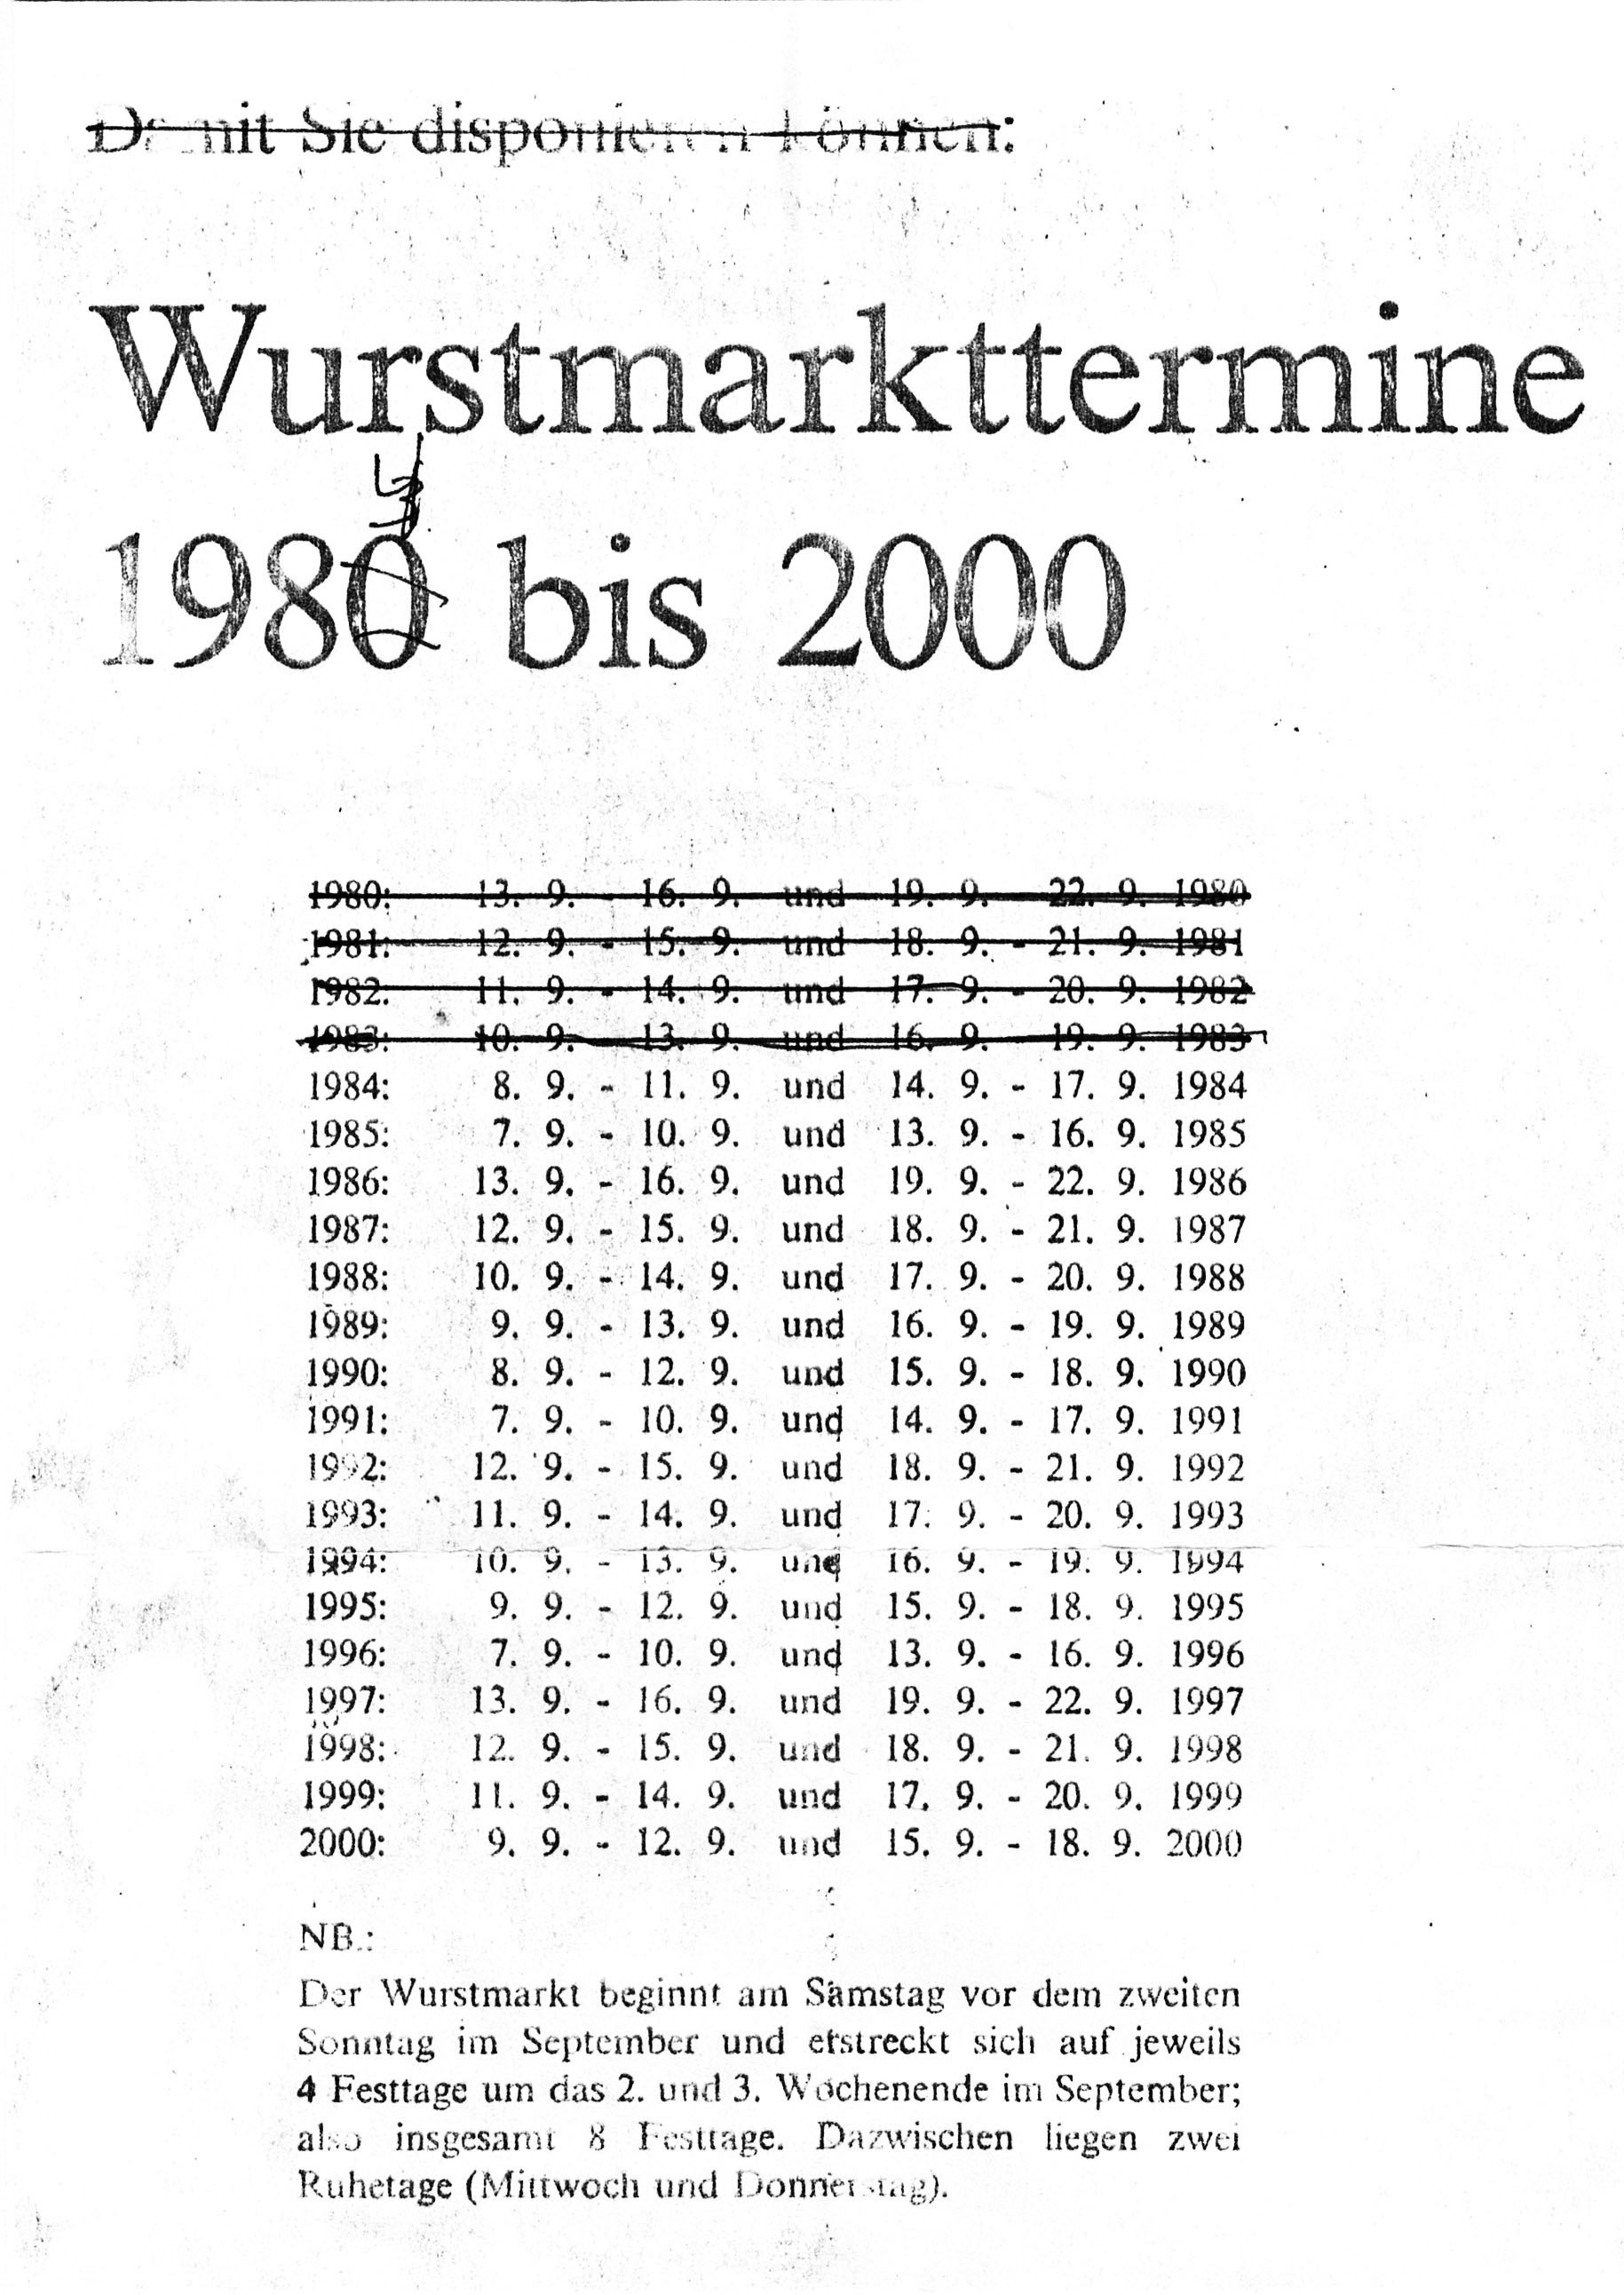 Foto-Sammlung Adolf Krapp, Ordner 15: Wurstmarkttermine, 1980-2000 (Museumsgesellschaft Bad Dürkheim e.V. CC BY-NC-SA)